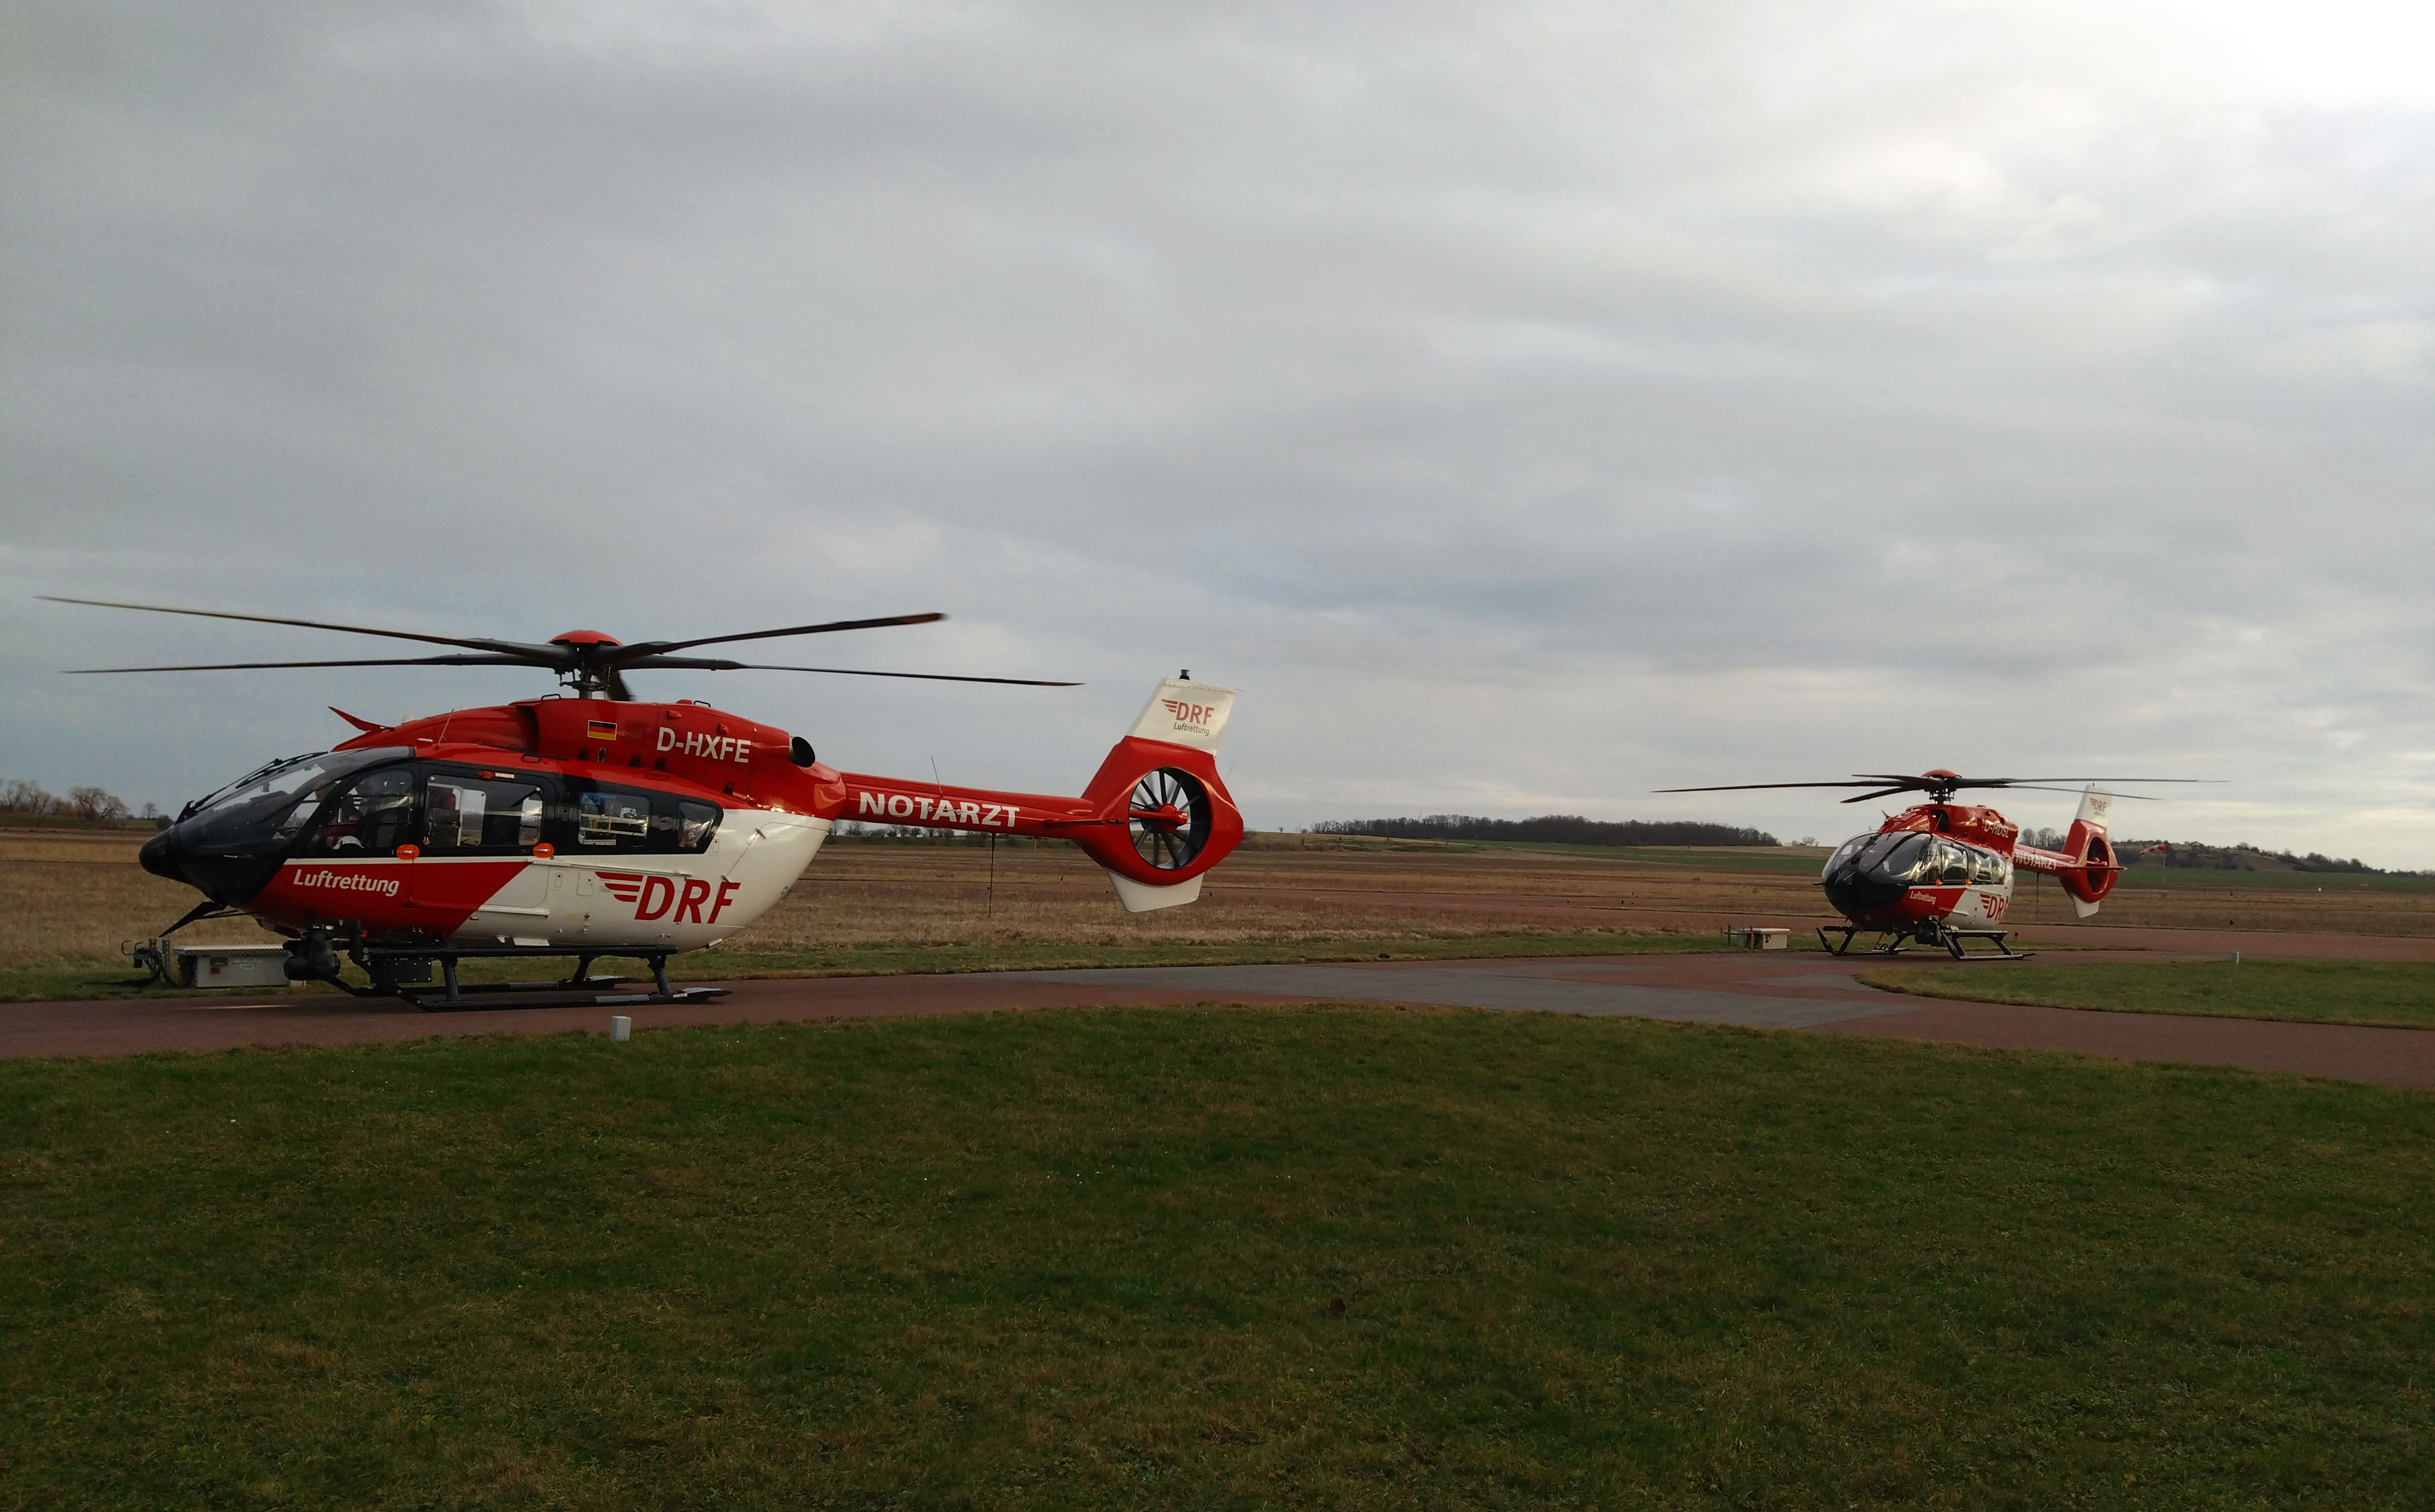 Zwei Hubschrauber des Typs H145 mit Fünfblattrotor stehen nebeneinander auf dem Vorplatz eines Flugplatzes.